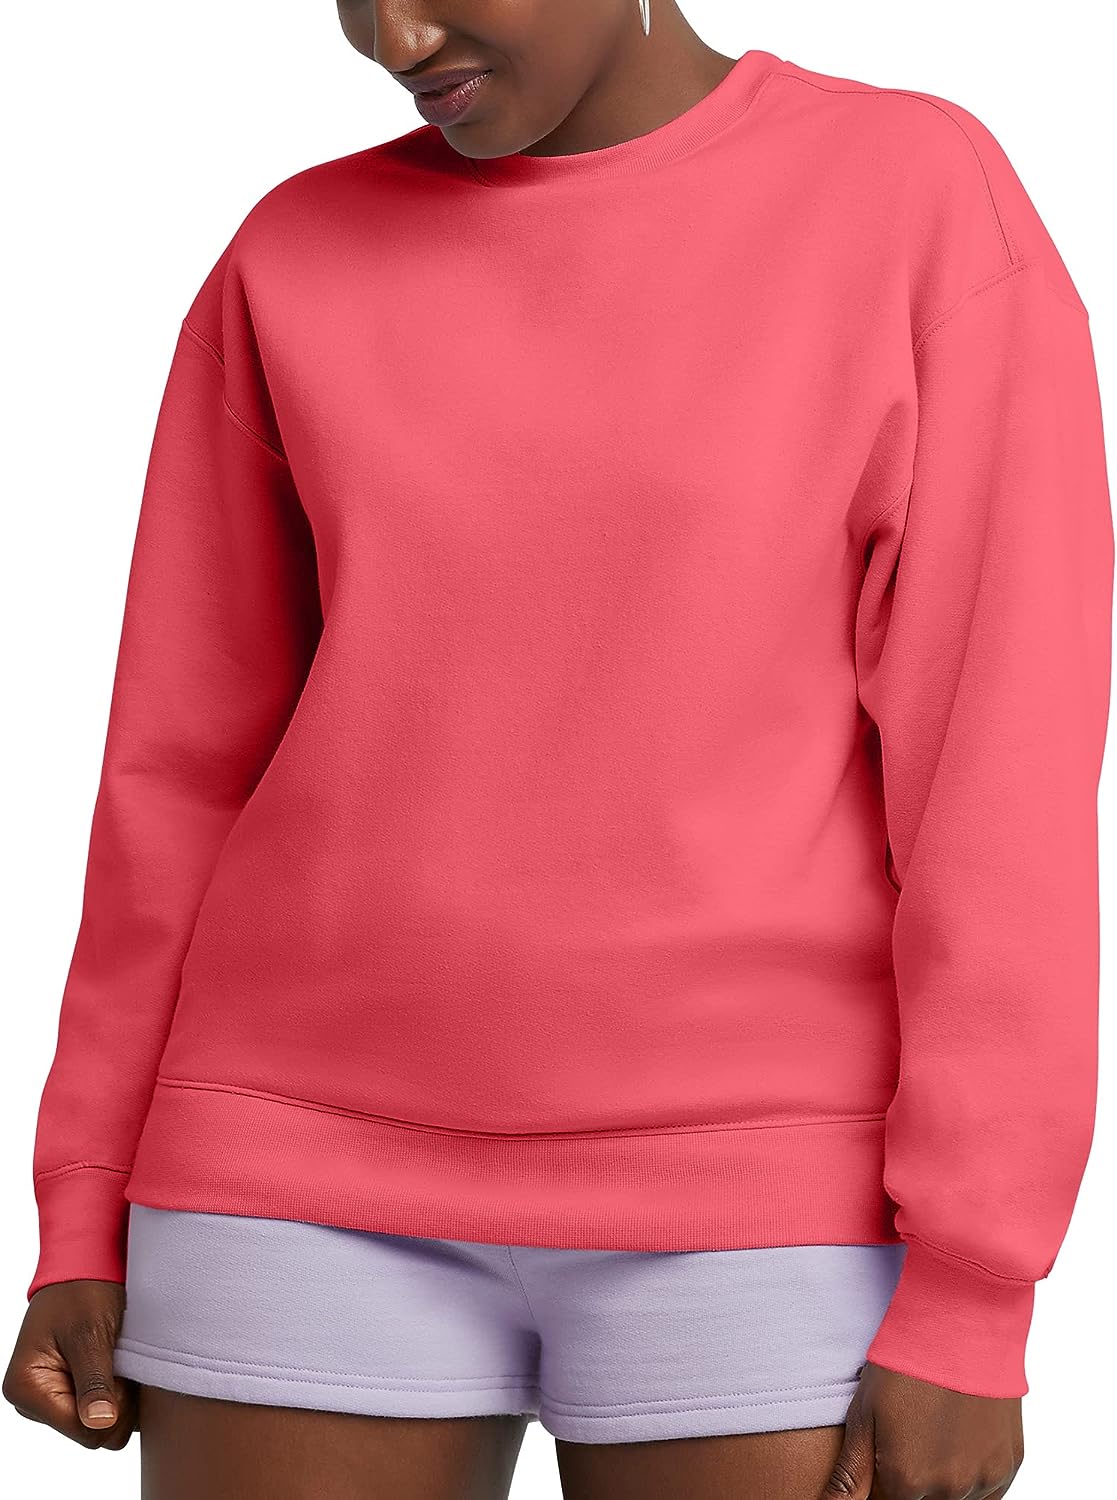 Hanes Originals Women's Fleece Sweatshirt, Midweight Sweatshirt for Women,  Place